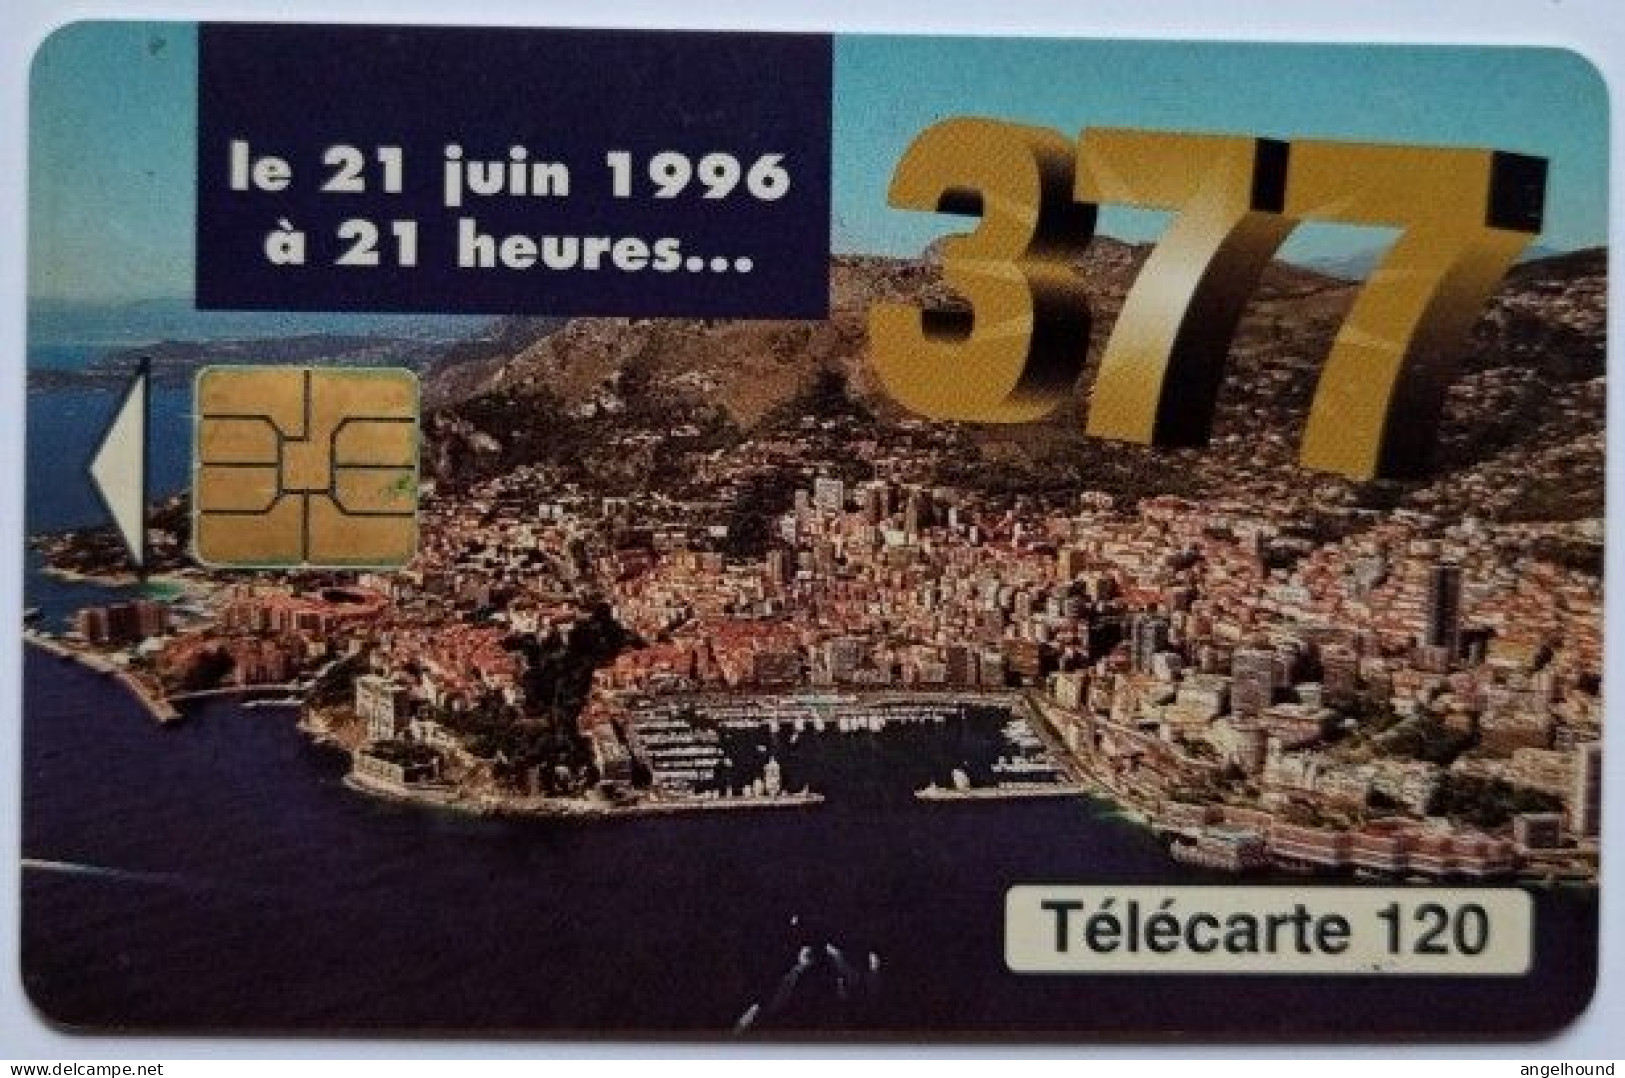 Monaco 120 Units Chip Card - 377  Changement De Numerotation - Monace